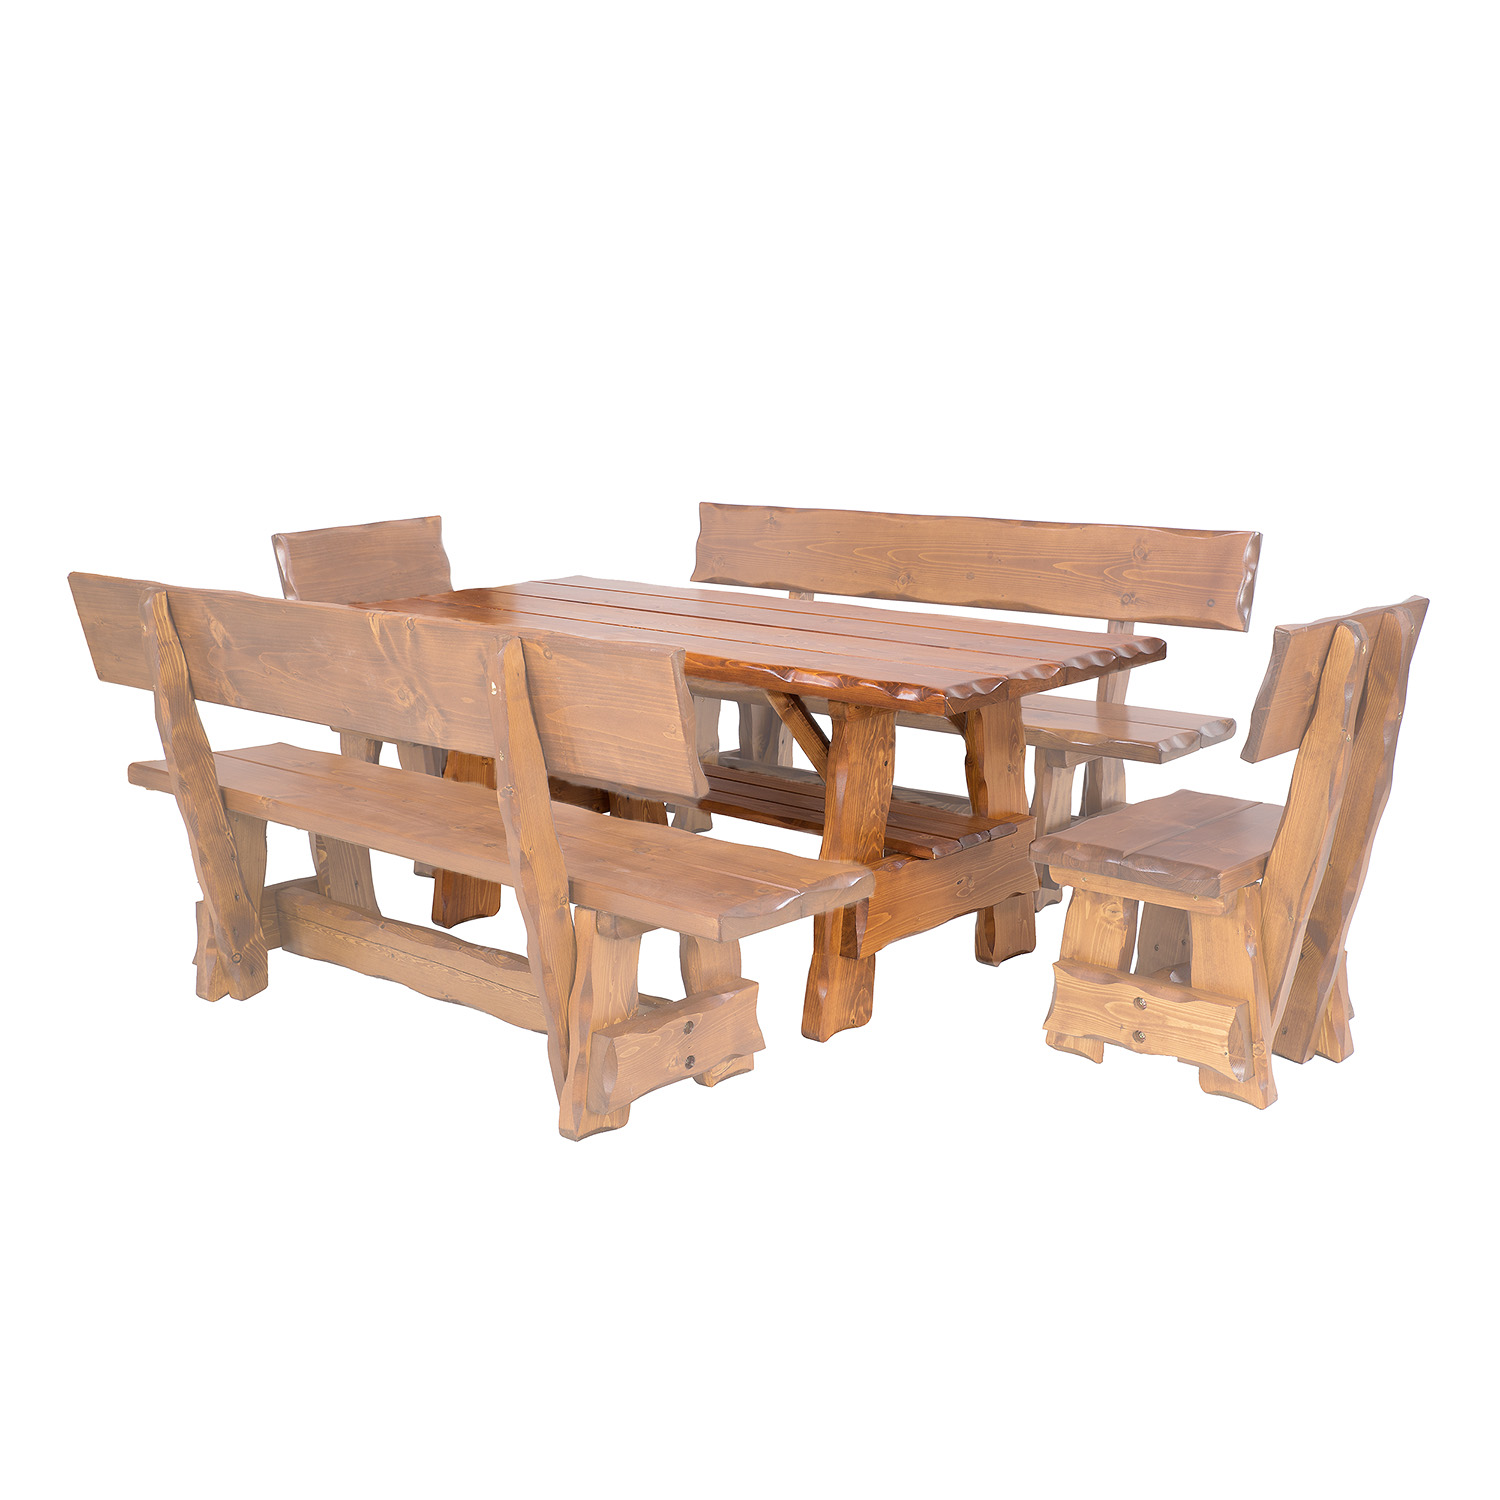 Zahradní stůl ze smrkového dřeva, lakovaný 200x80x83cm - Dub lak